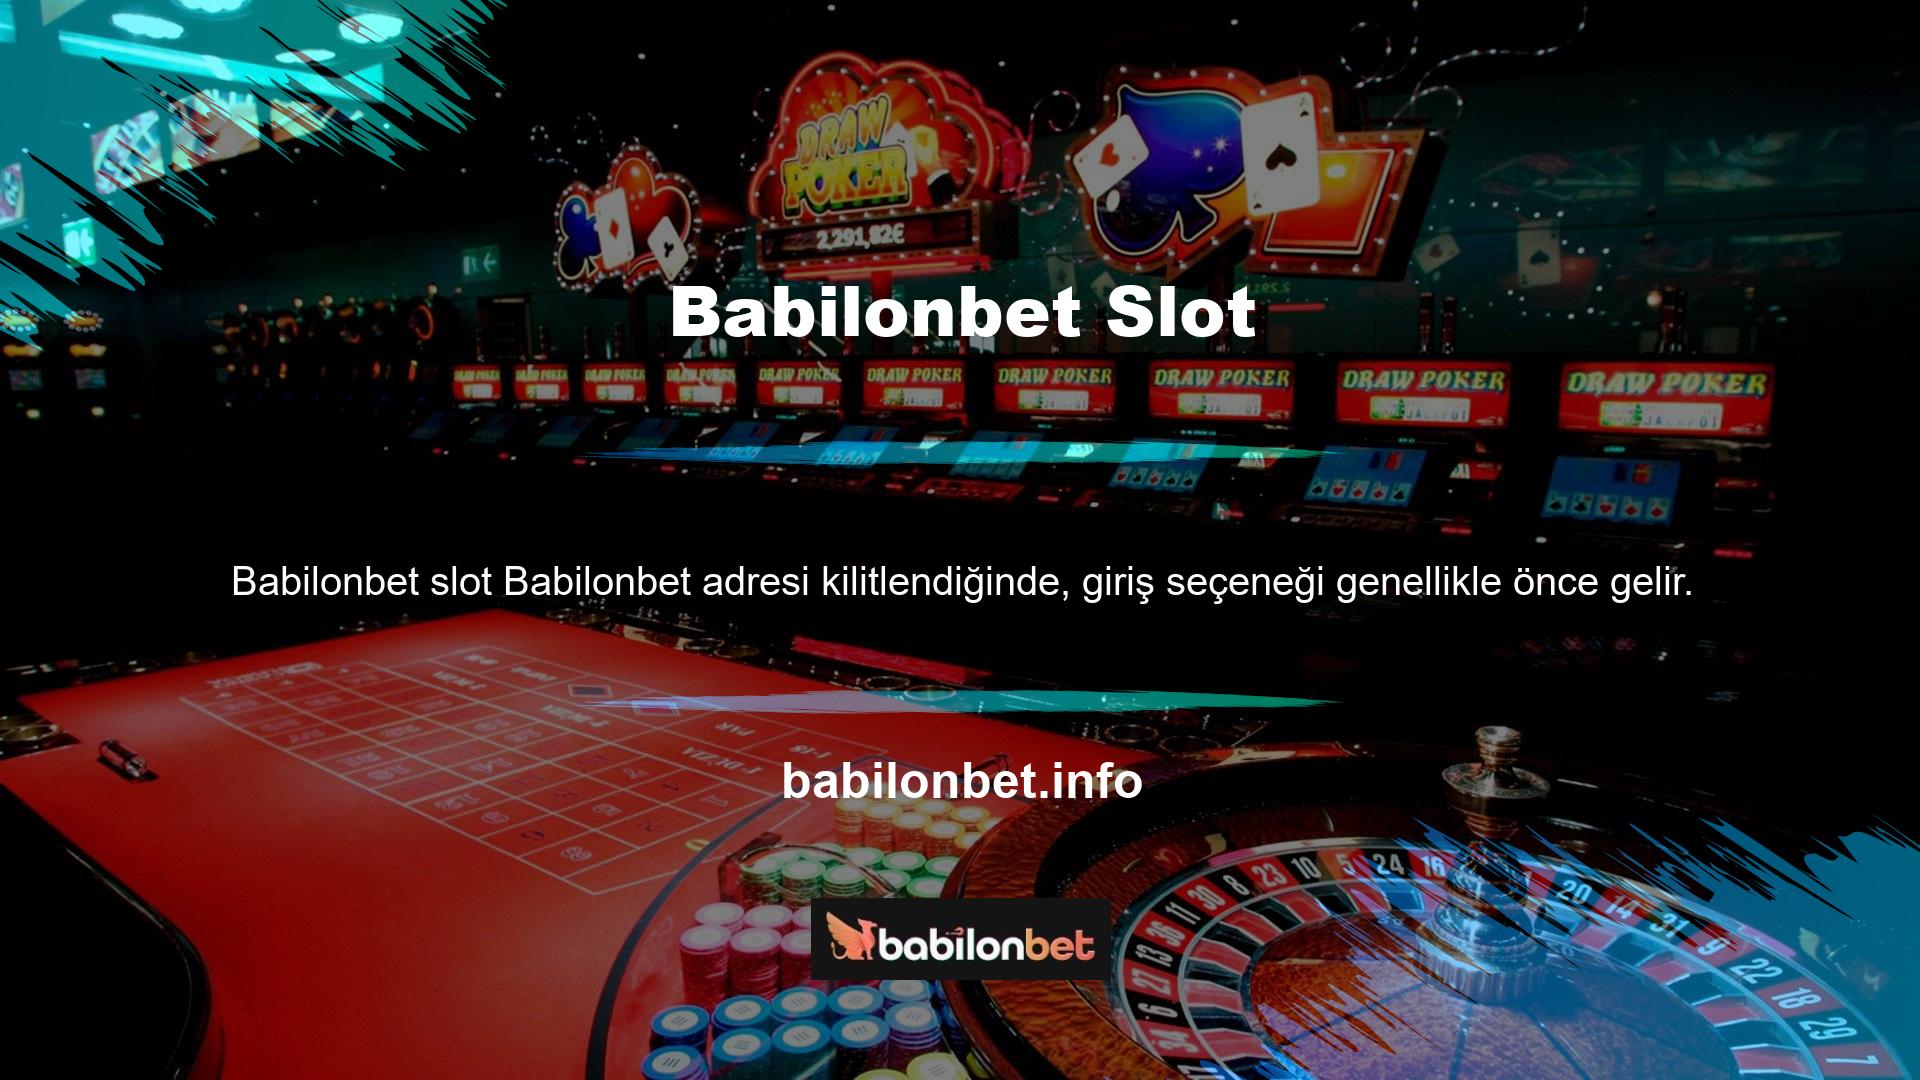 Casino sitesinin slot oyunları son derece güvenilirdir ve bu oyunları oynarken herhangi bir güvenlik sorununun ortaya çıkmamasını sağlar